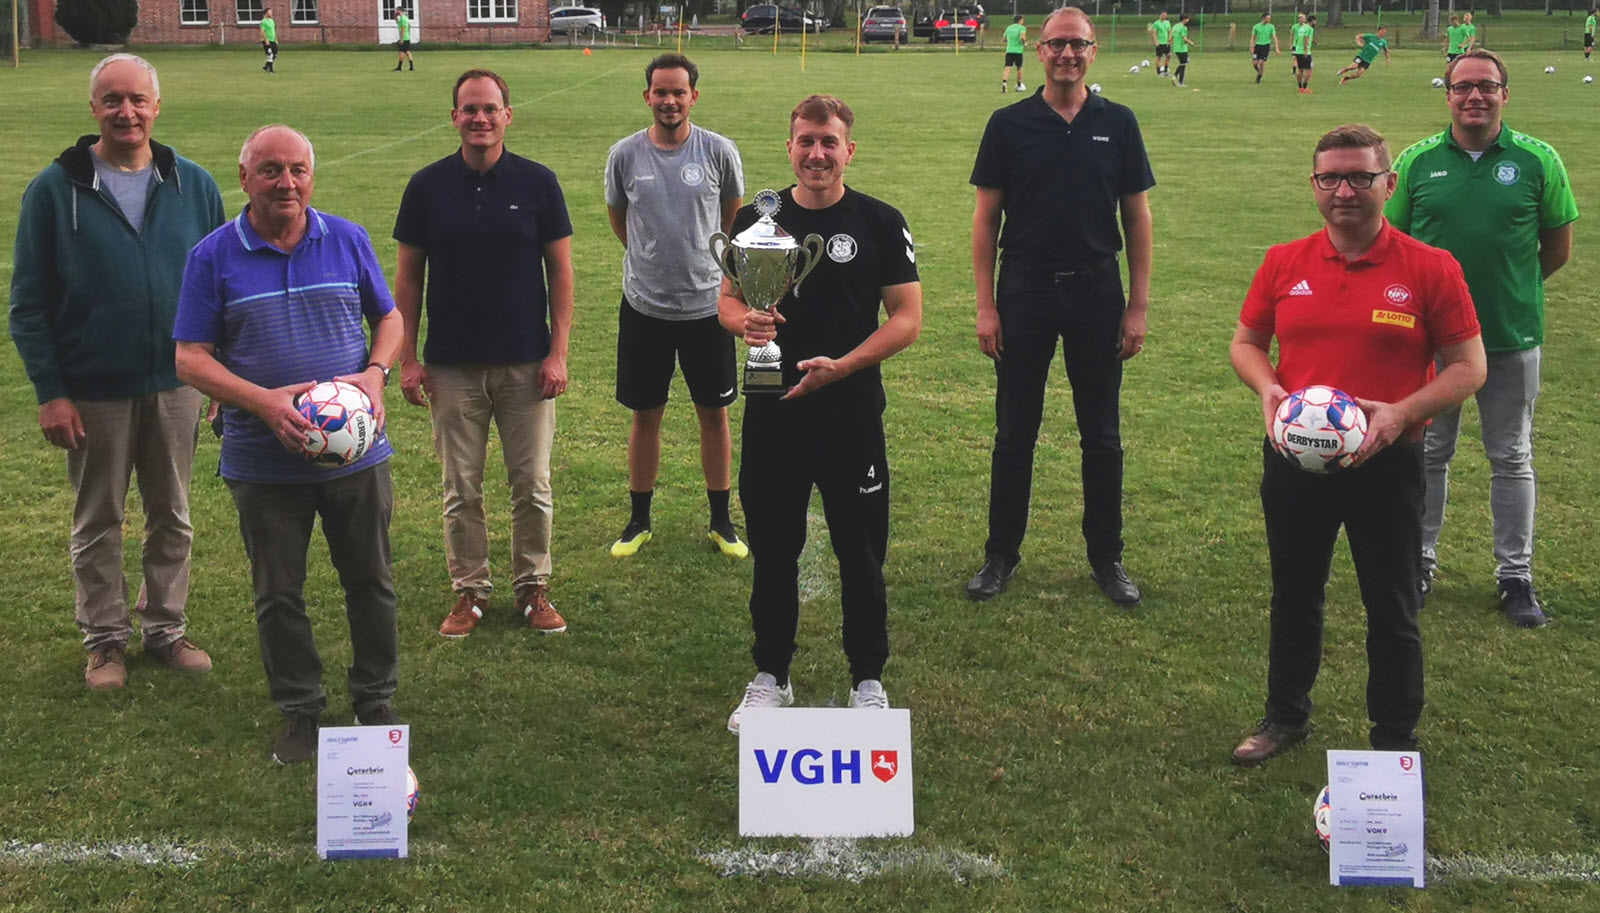 TSV Bardowick 1. Herren erhält Auszeichnung für Fairness